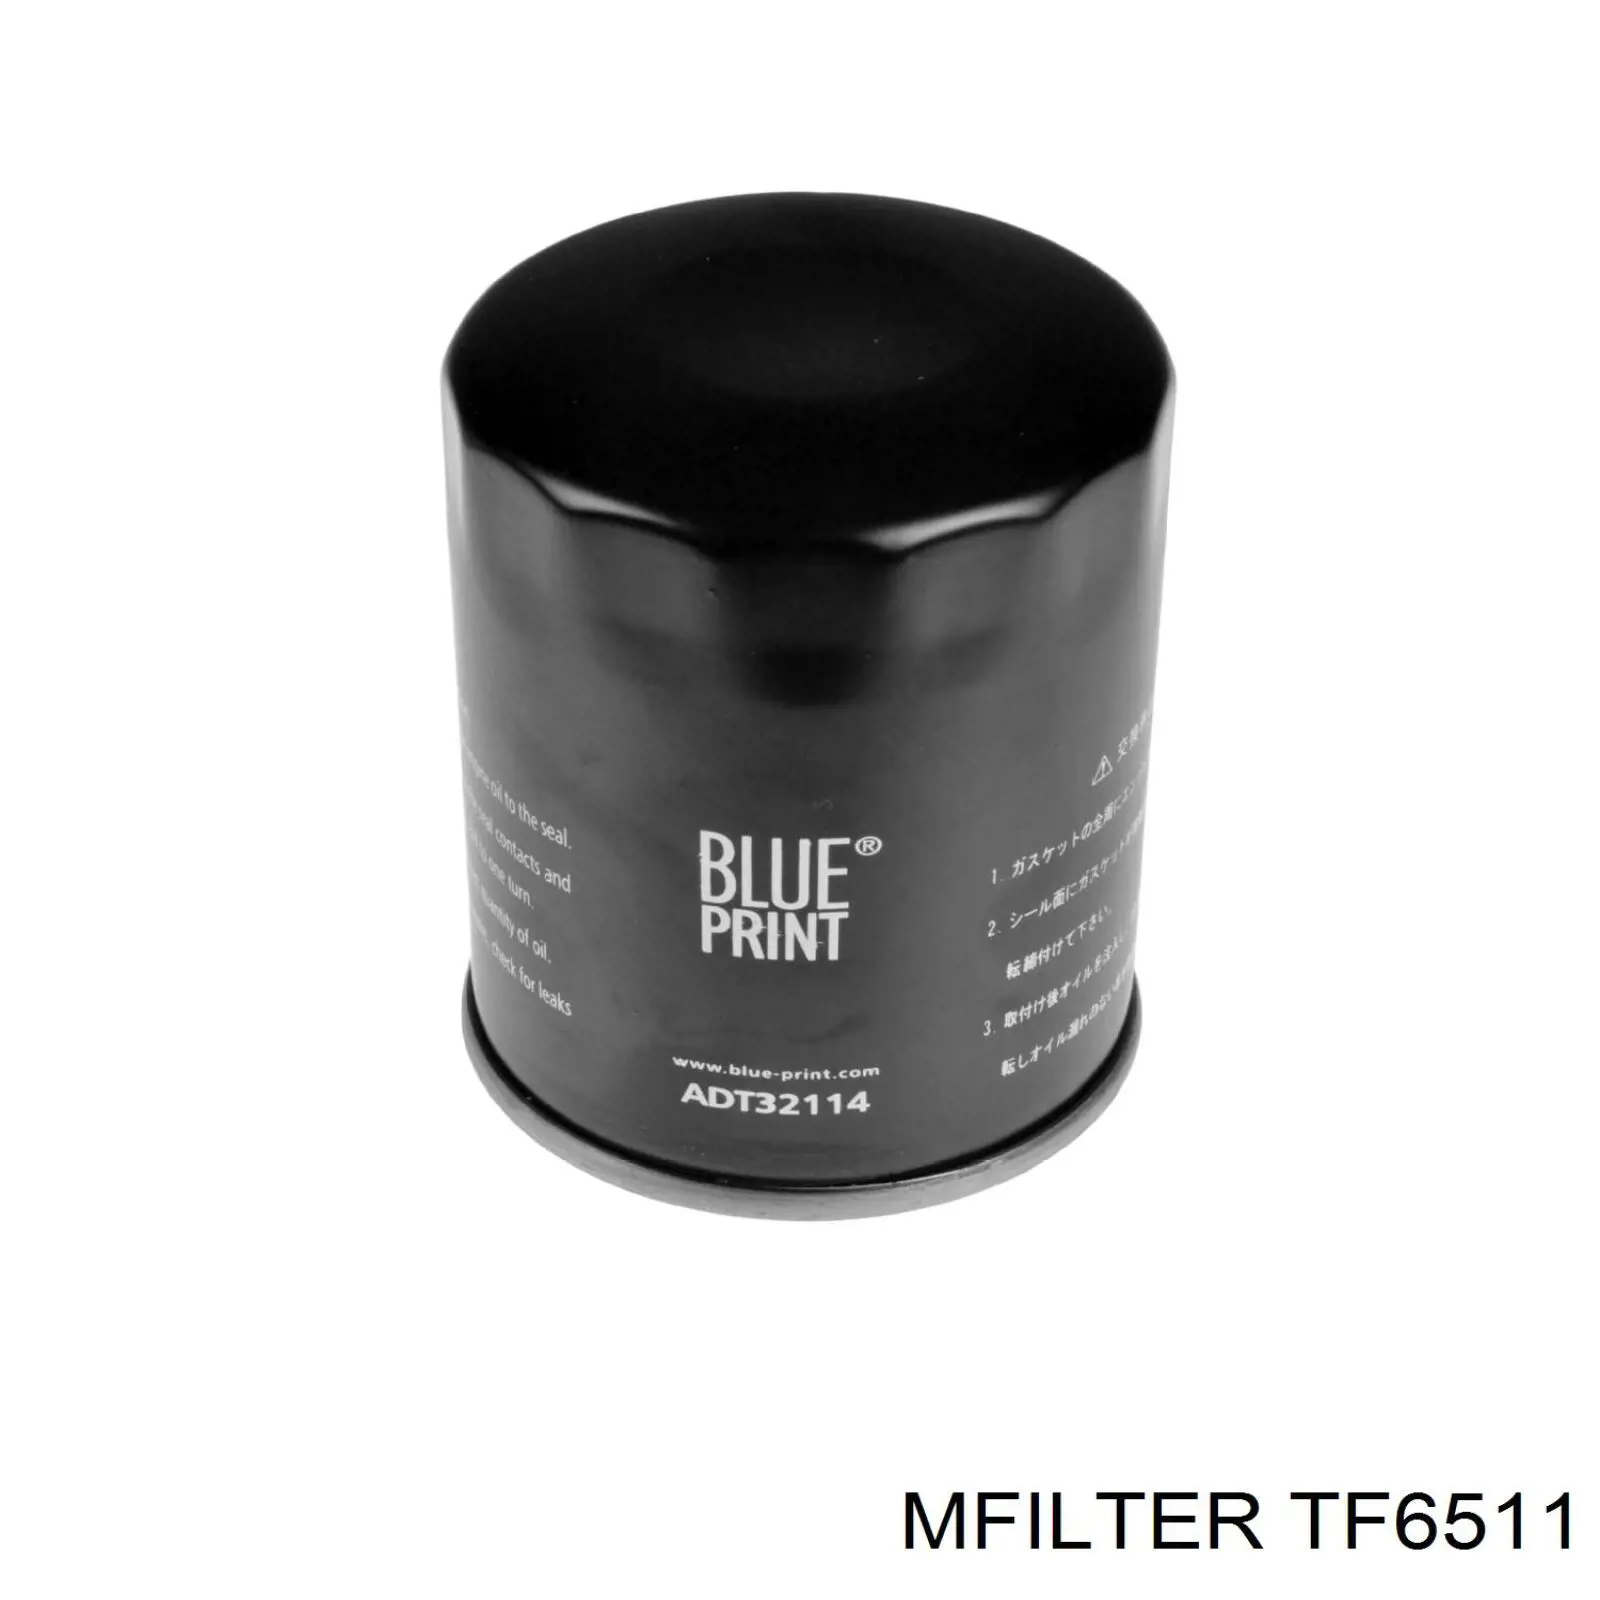 TF6511 Mfilter filtro de aceite